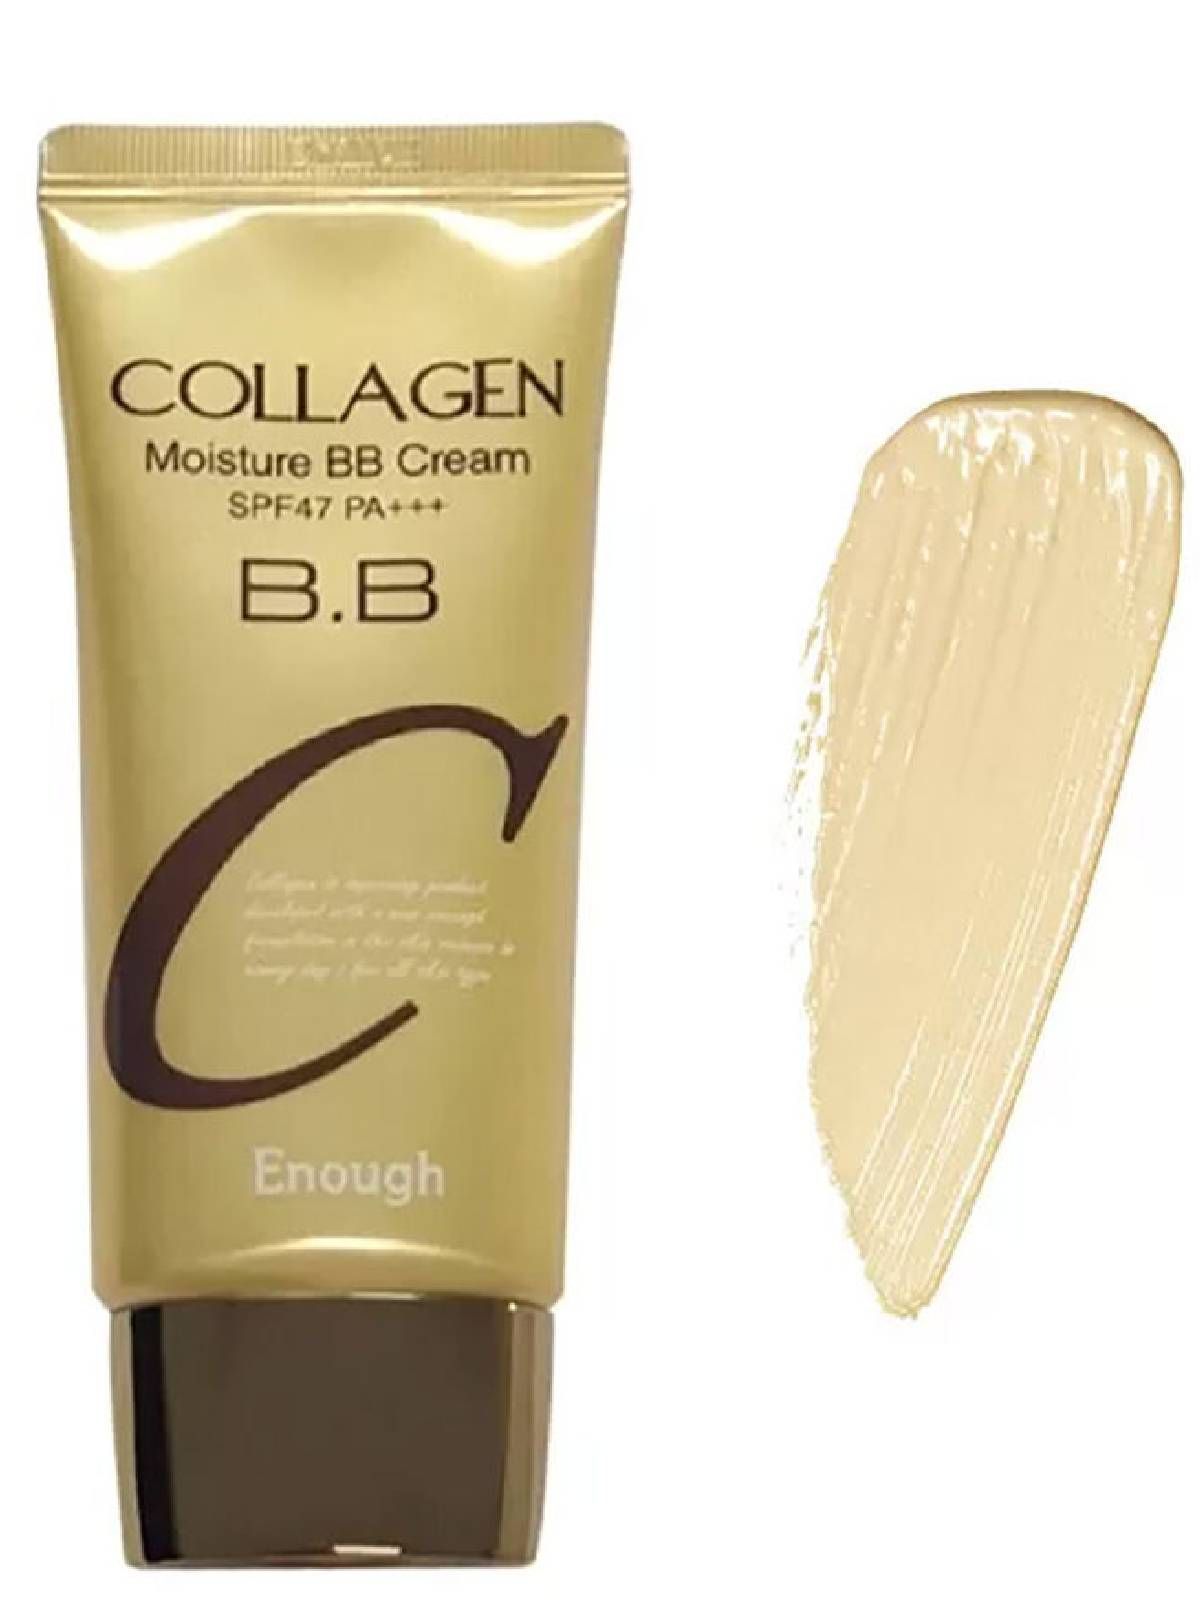 Вв коллаген. Enough Collagen BB Cream spf47 pa+++. Увлажняющий ВВ крем с коллагеном enough SPF 47 pa+++. Collagen Moisture BB Cream spf47 pa+++. Увлажняющий ББ крем с коллагеном - enough Collagen Moisture BB Cream spf47 pa+++.